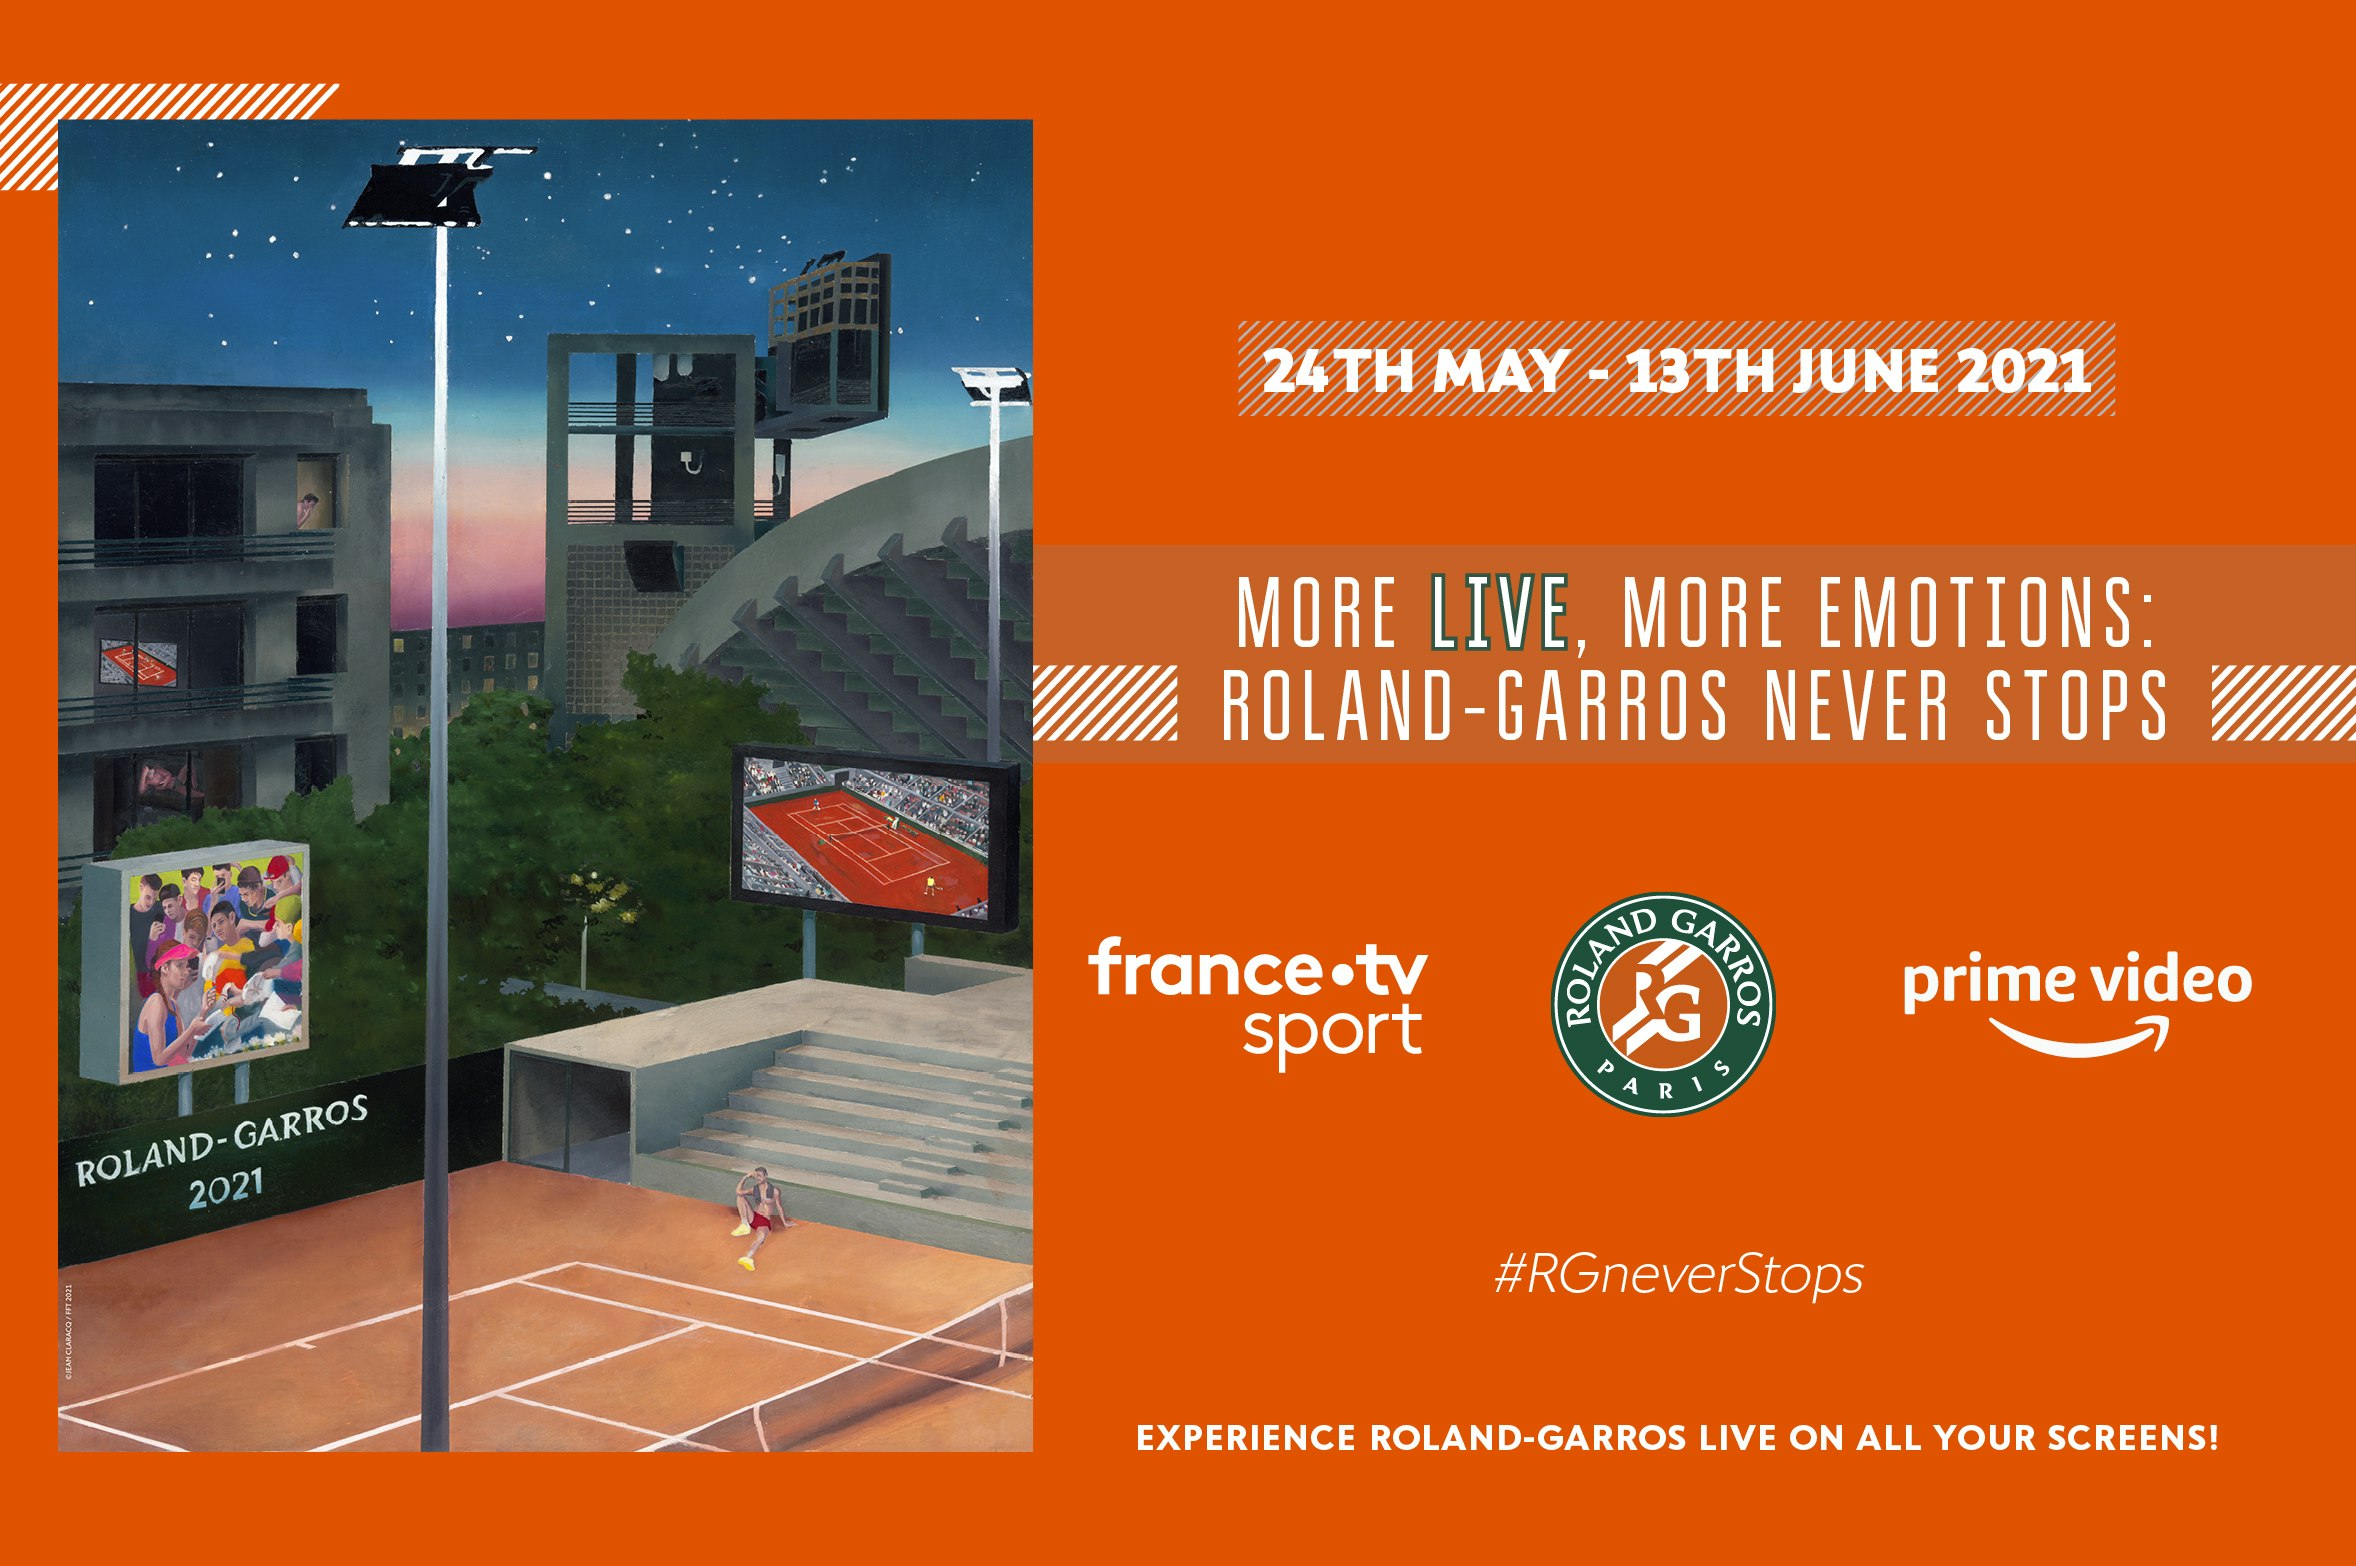 Roland-Garros 2021 broadcast where and how to watch the tournament? - Roland-Garros